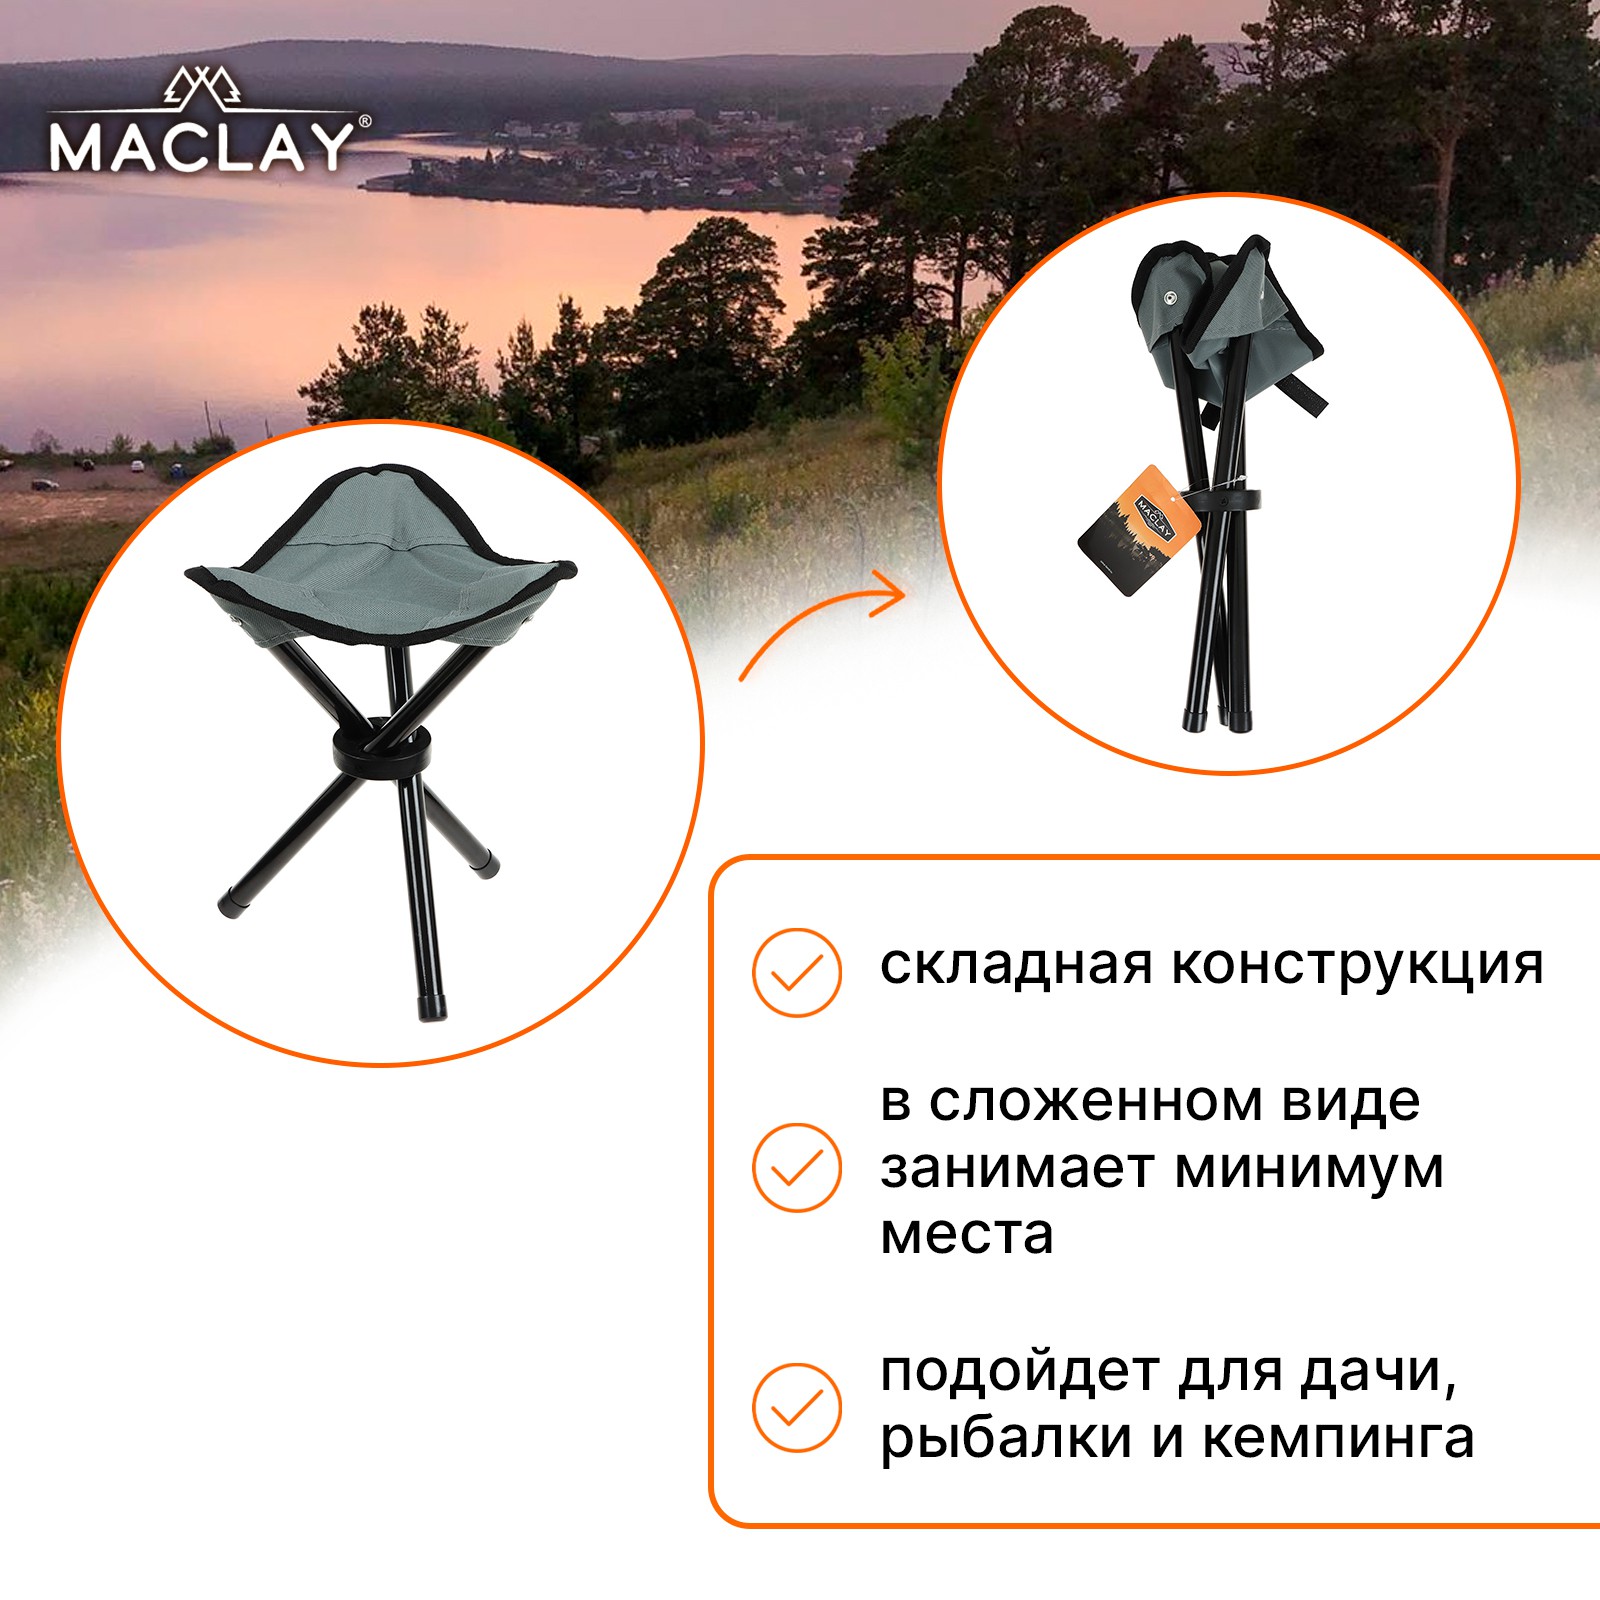 Стул туристический Maclay складной 22х20х30 см до 60кг серый - фото 6